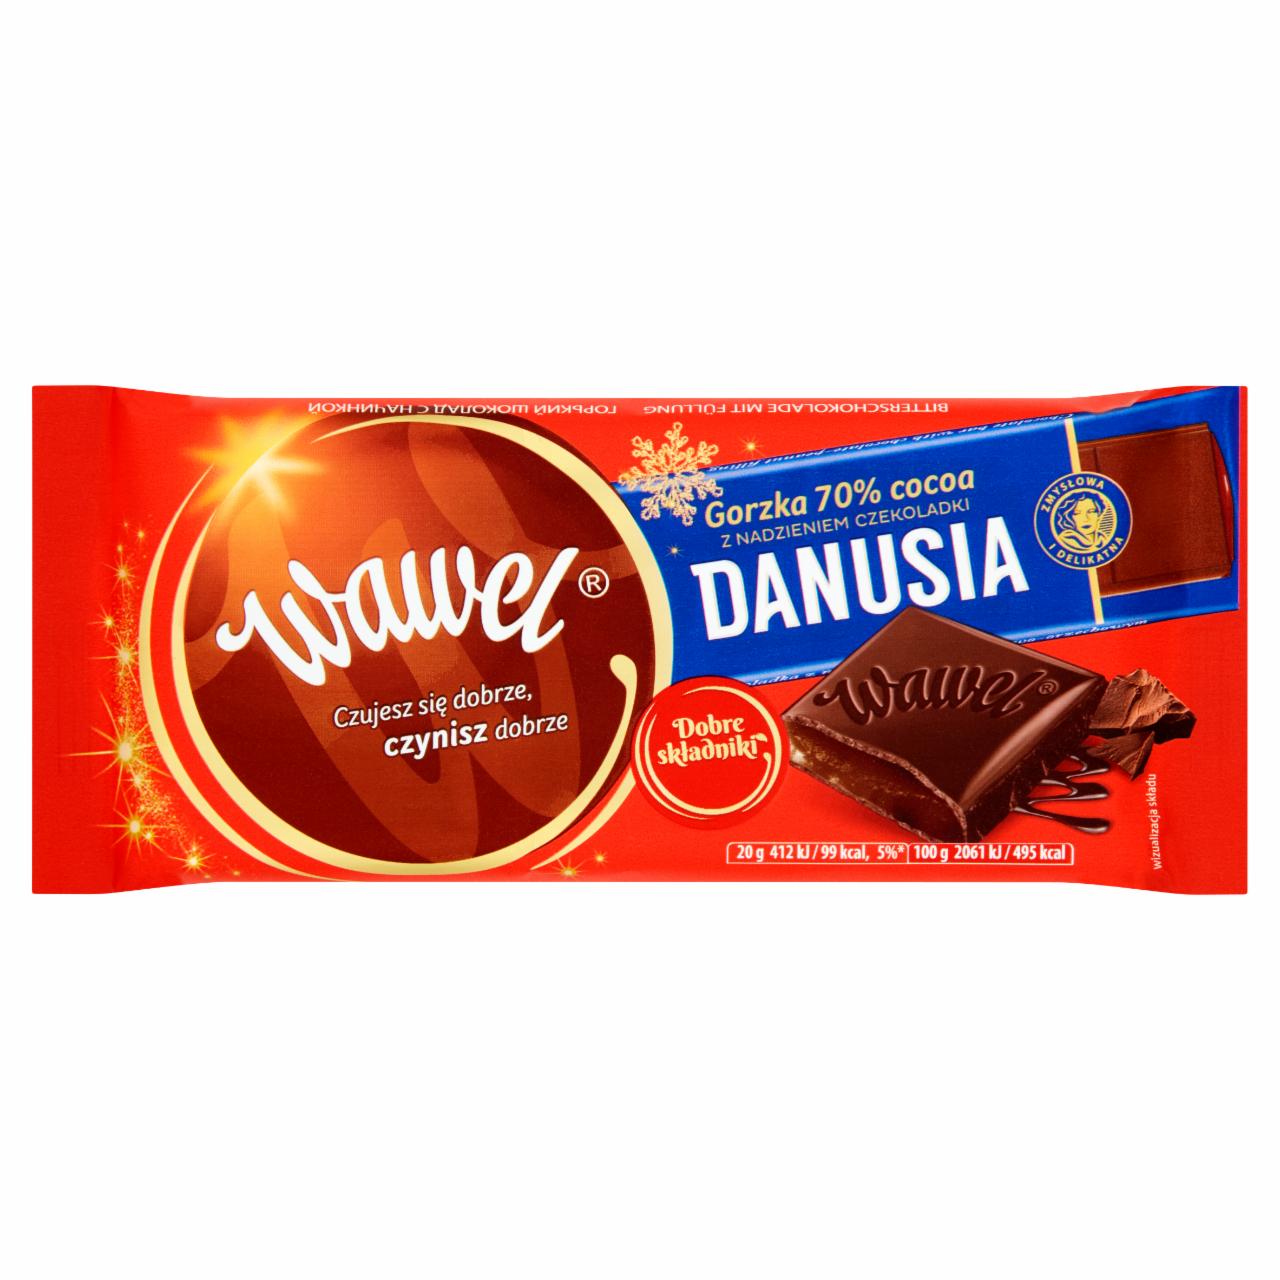 Zdjęcia - Wawel Czekolada gorzka 70 % cocoa z nadzieniem czekoladki Danusia 100 g